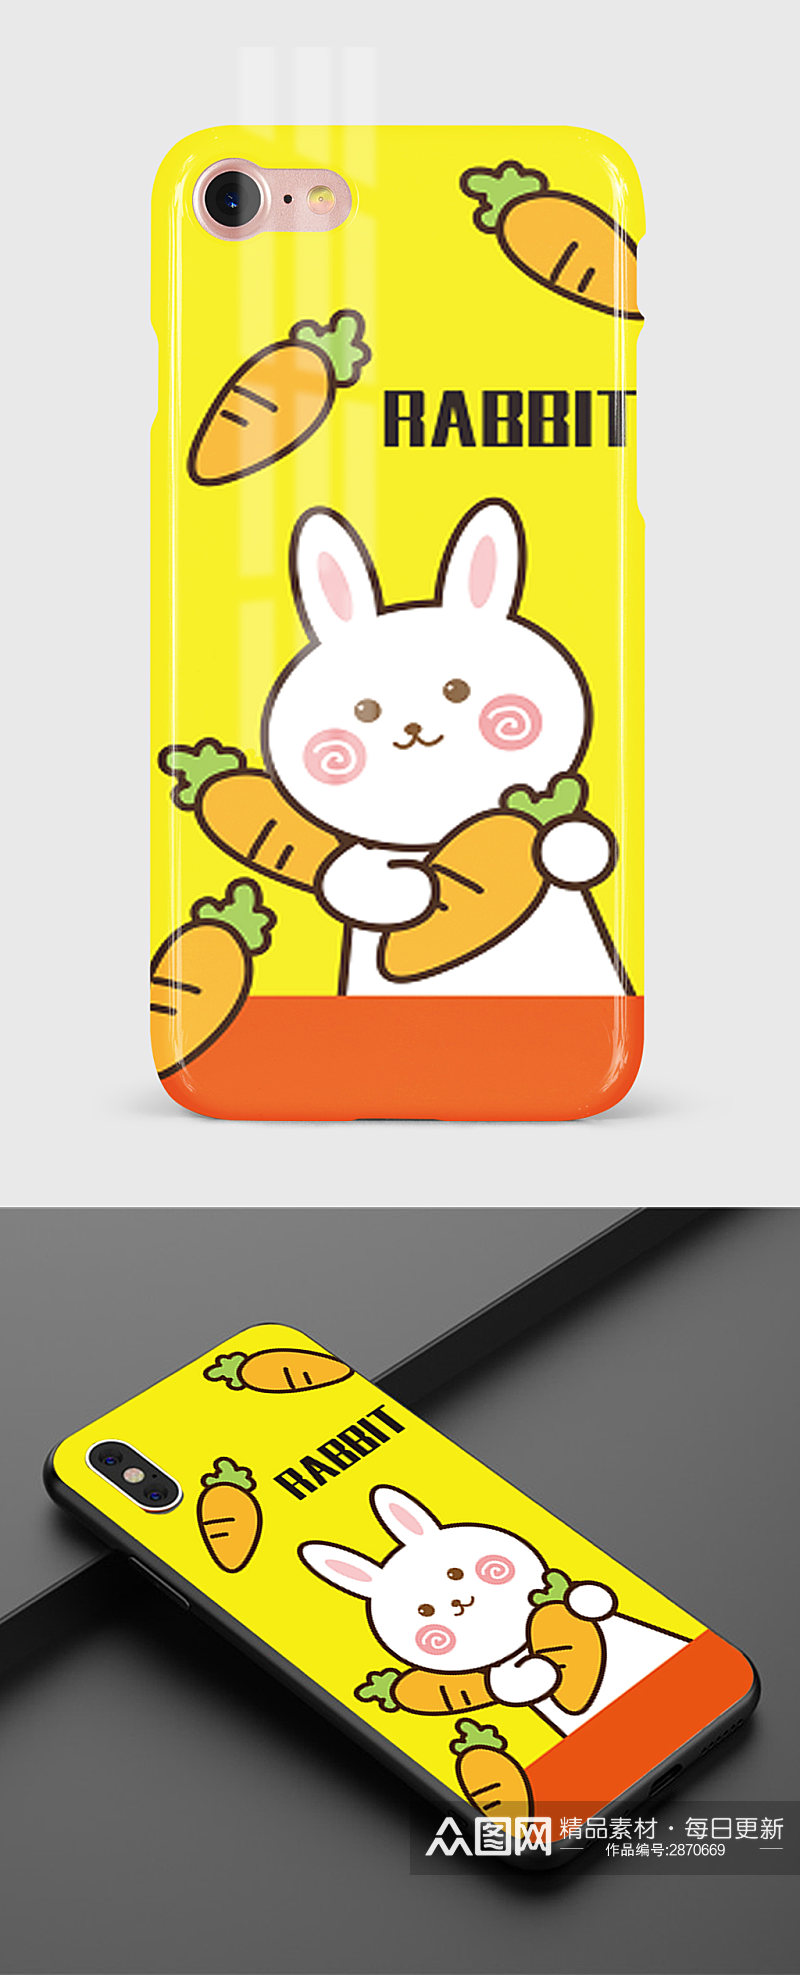 40原创手绘卡通抱着萝卜的可爱兔子手机壳素材